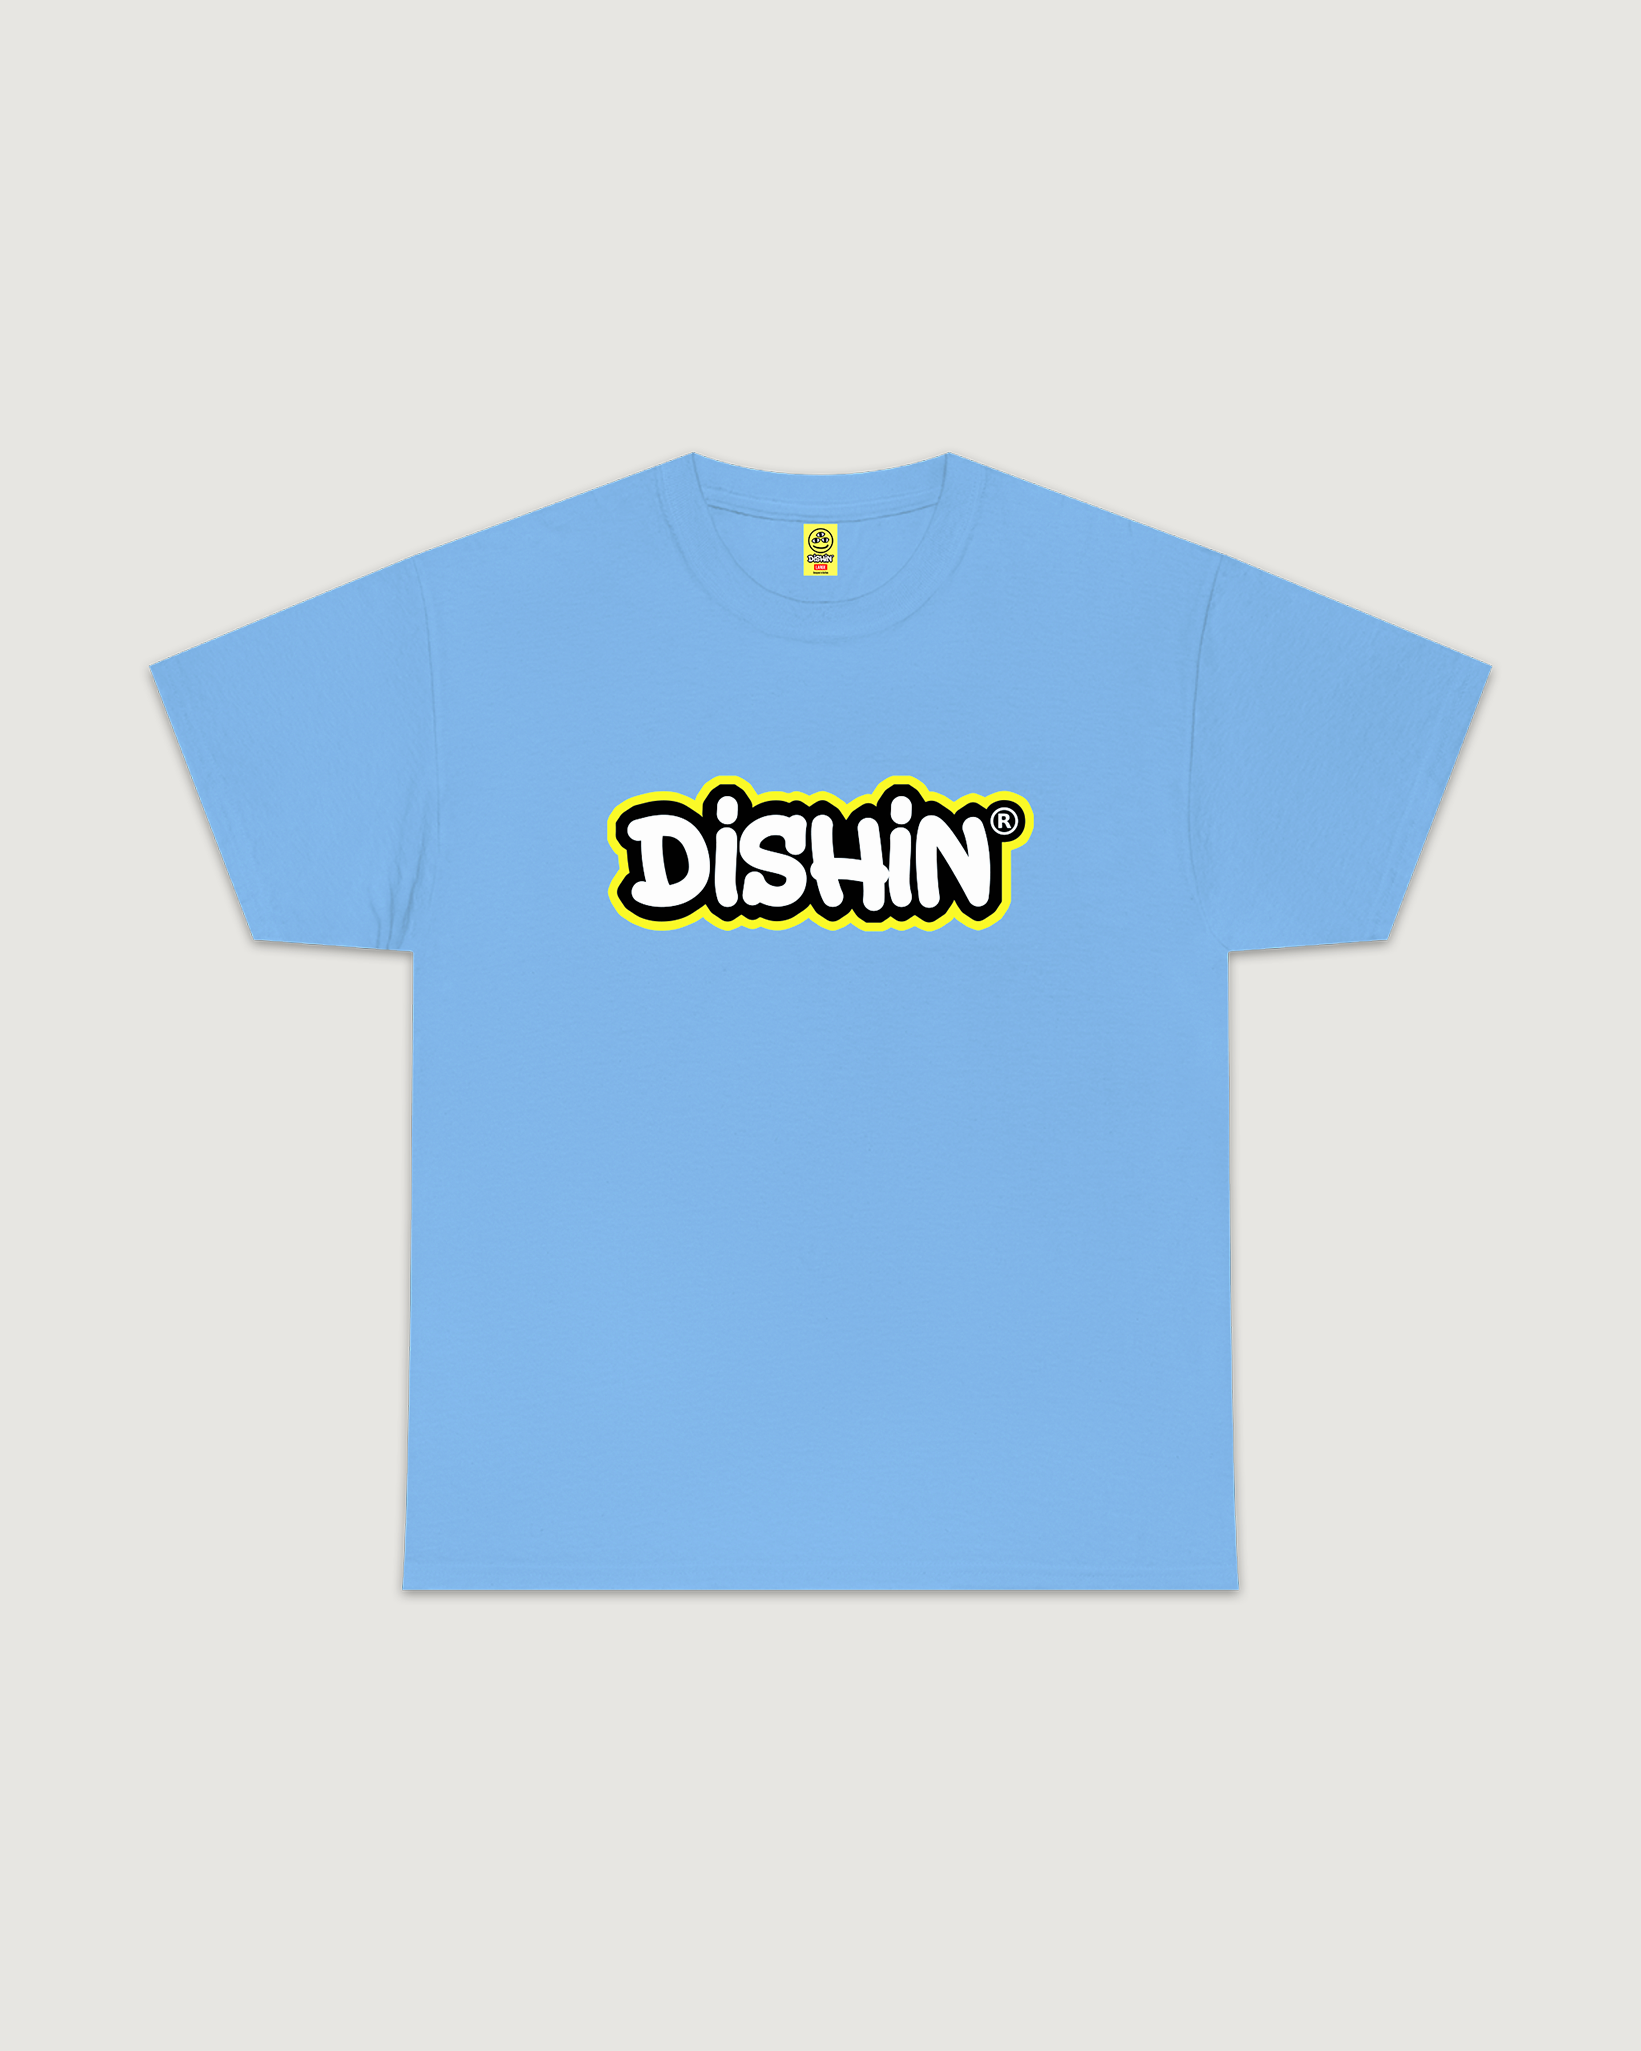 Dishin Shirt (Carolina Blue)